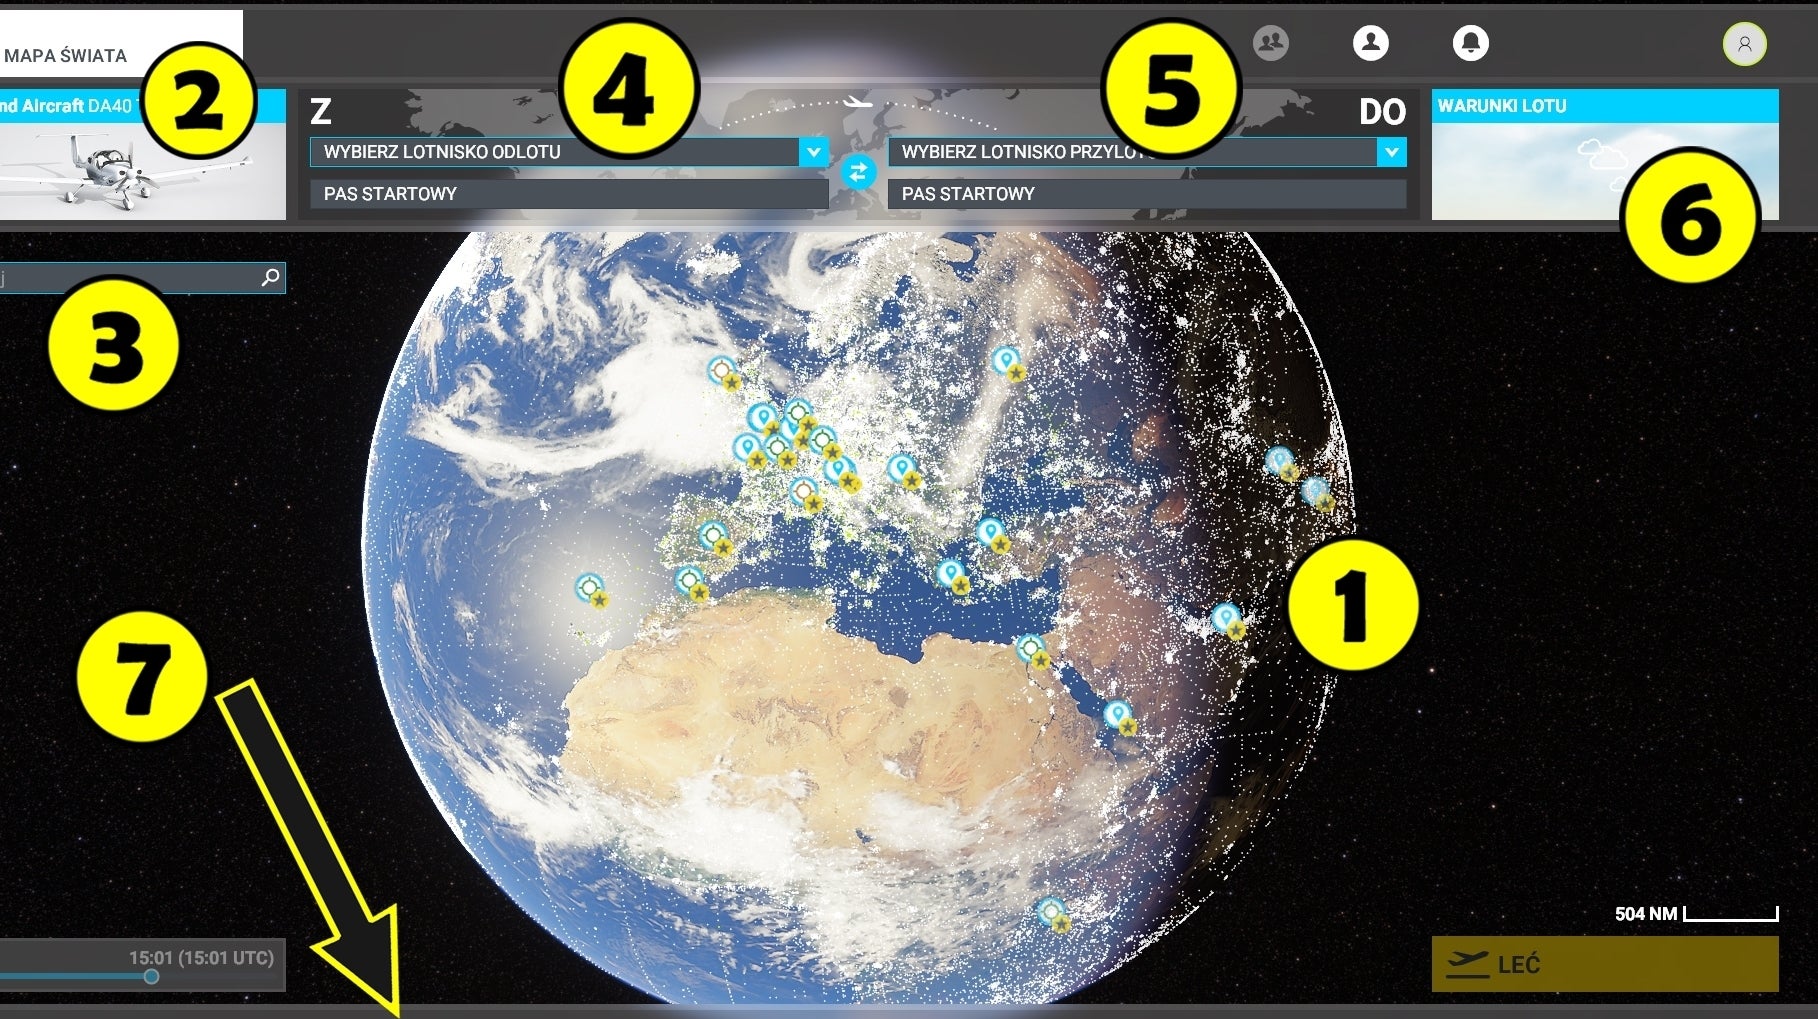 Obrazki dla Microsoft Flight Simulator - mapa świata: podstawowe informacje